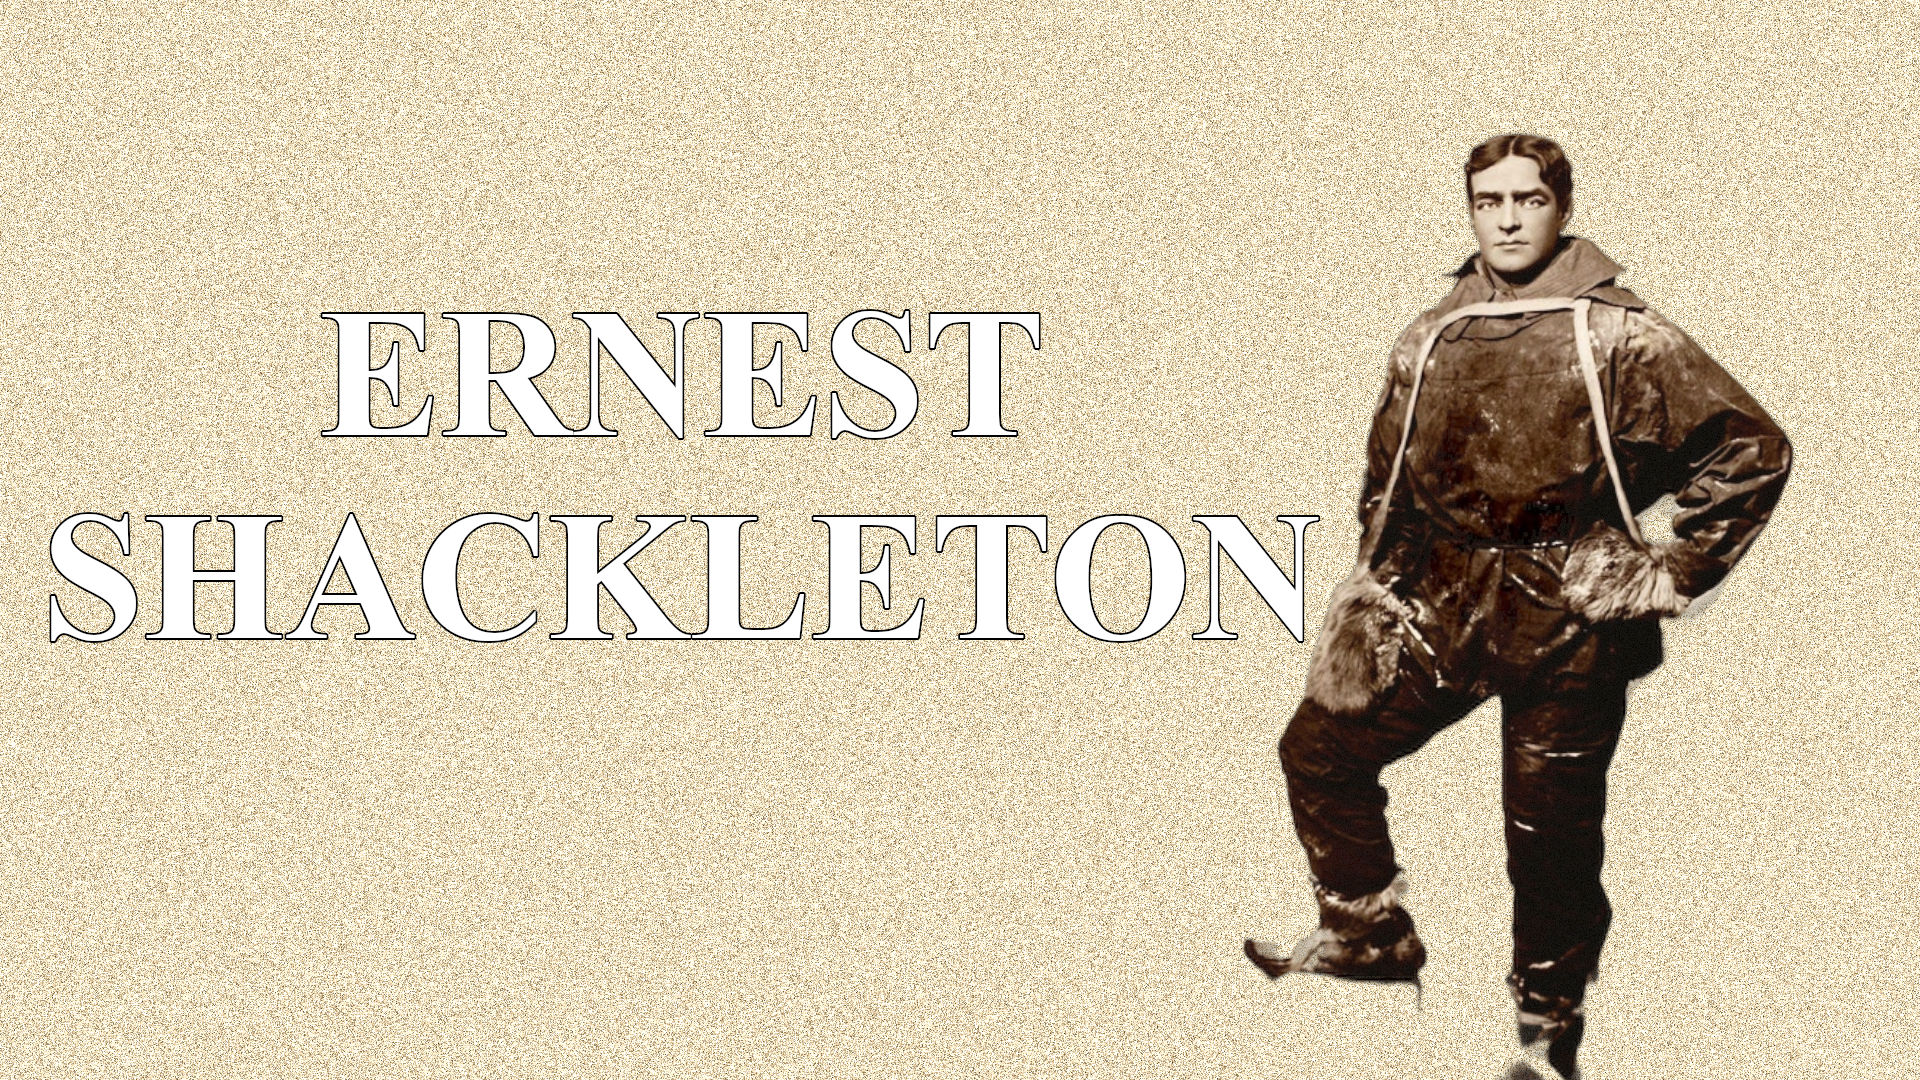 Legendary explorer and leader, Ernest Shackleton